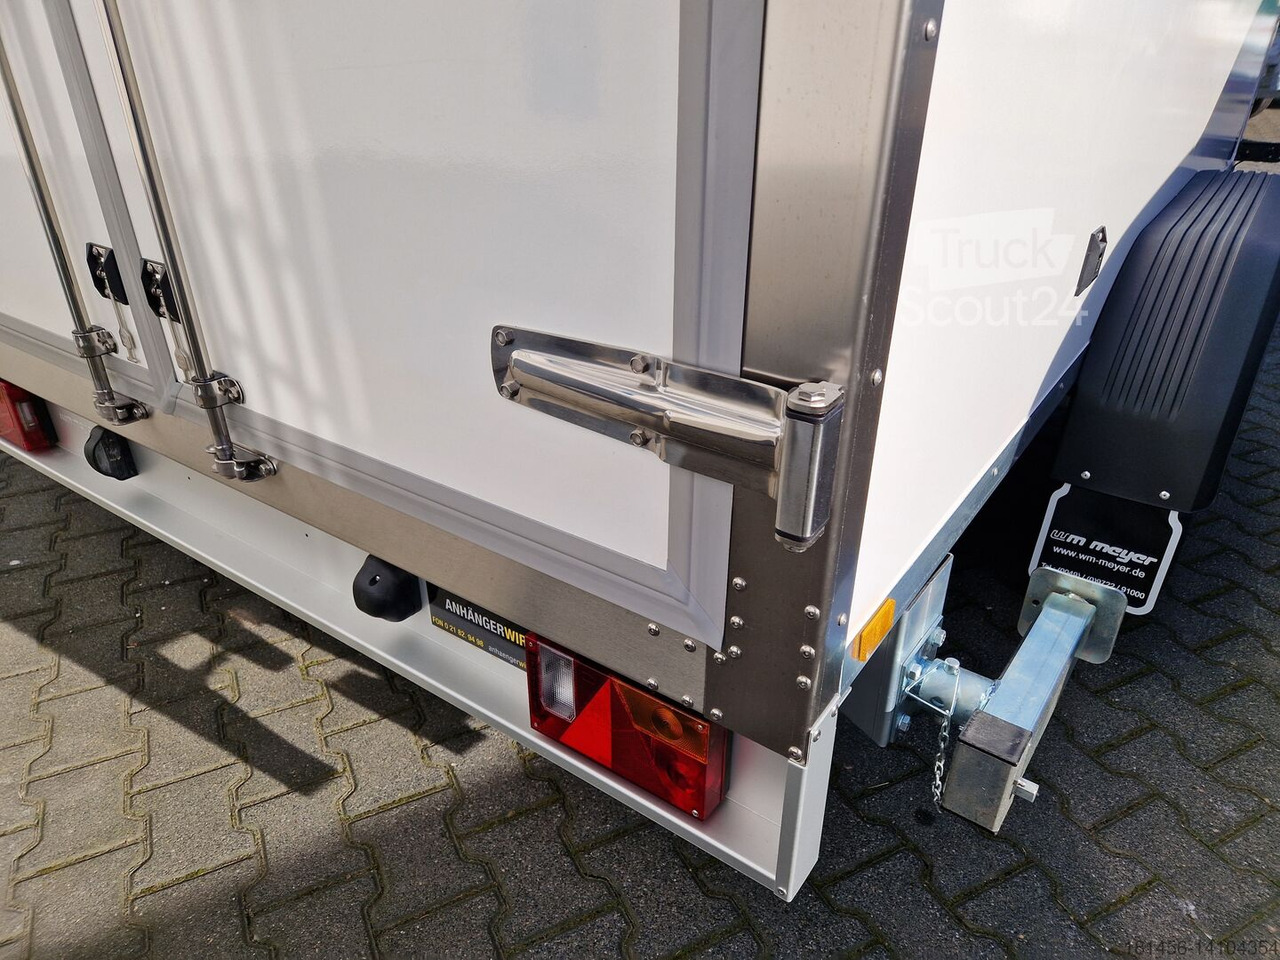 New Refrigerator trailer Wm Meyer Tiefkühlanhänger direkt verfügbar AZK 2734/180 336x170x200cm 100 isolierung Govi 230V Kühlung: picture 5